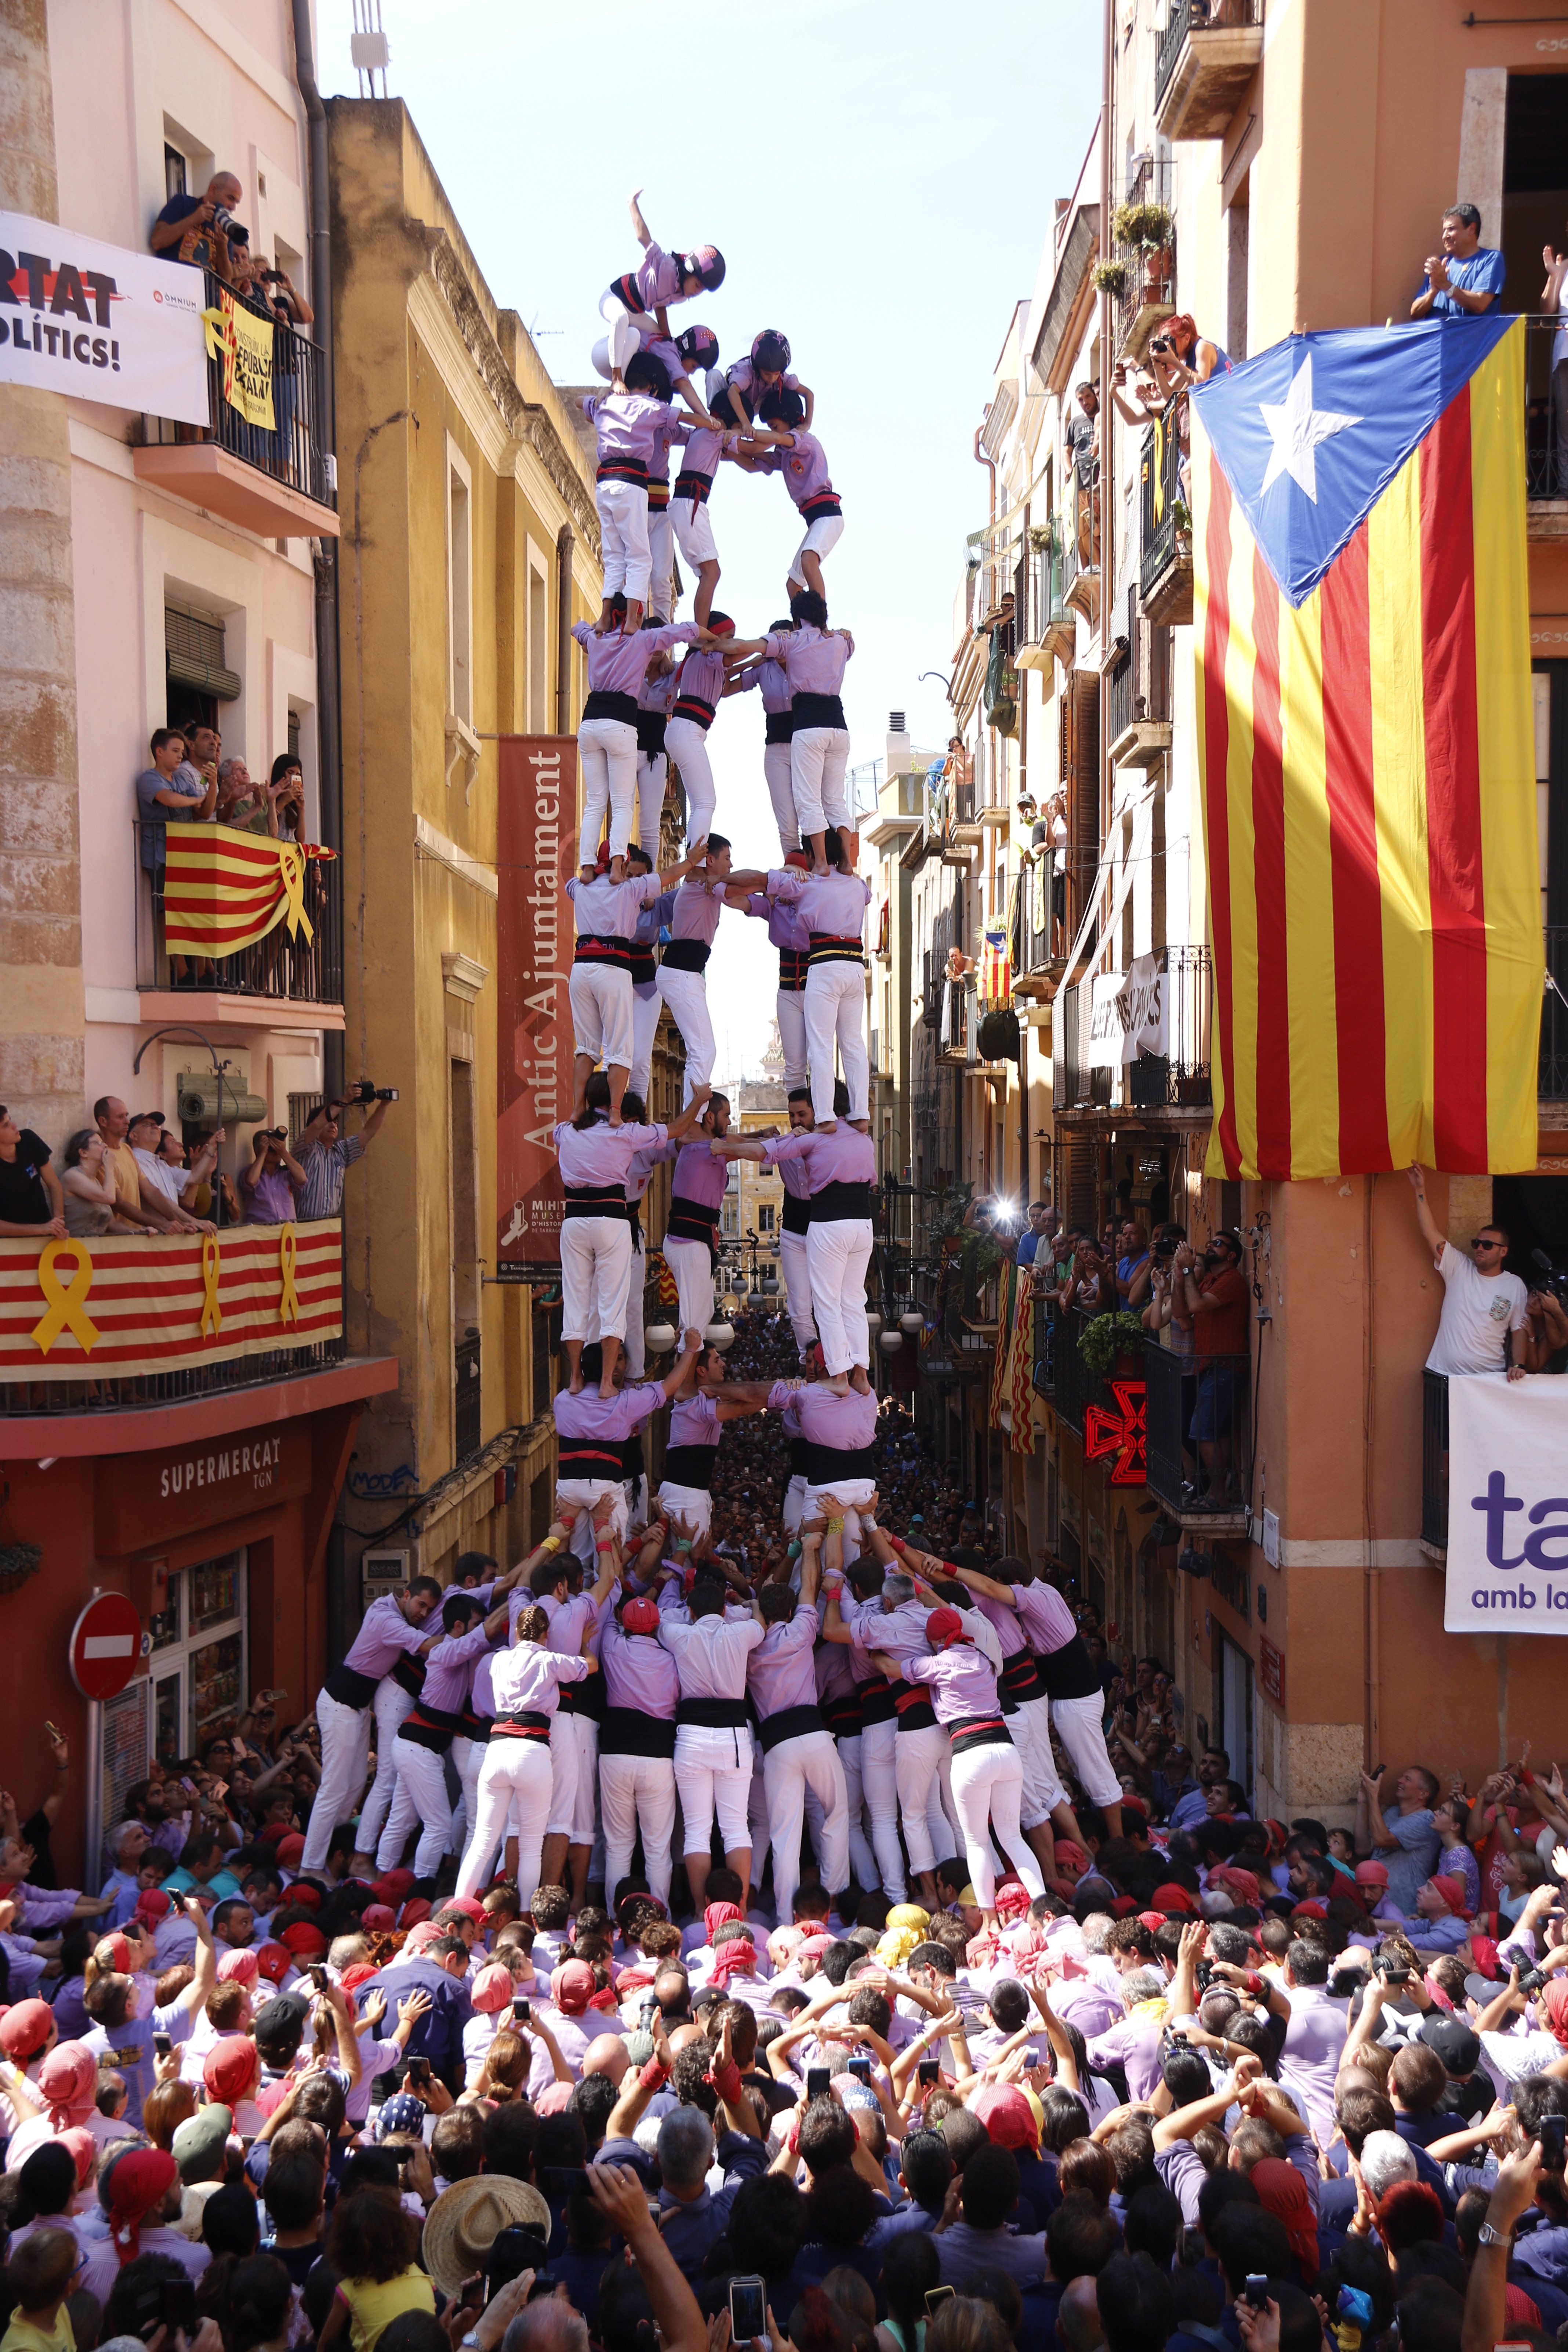 Las colles castelleras de Tarragona pisan fuerte en la diada de Sant Magí